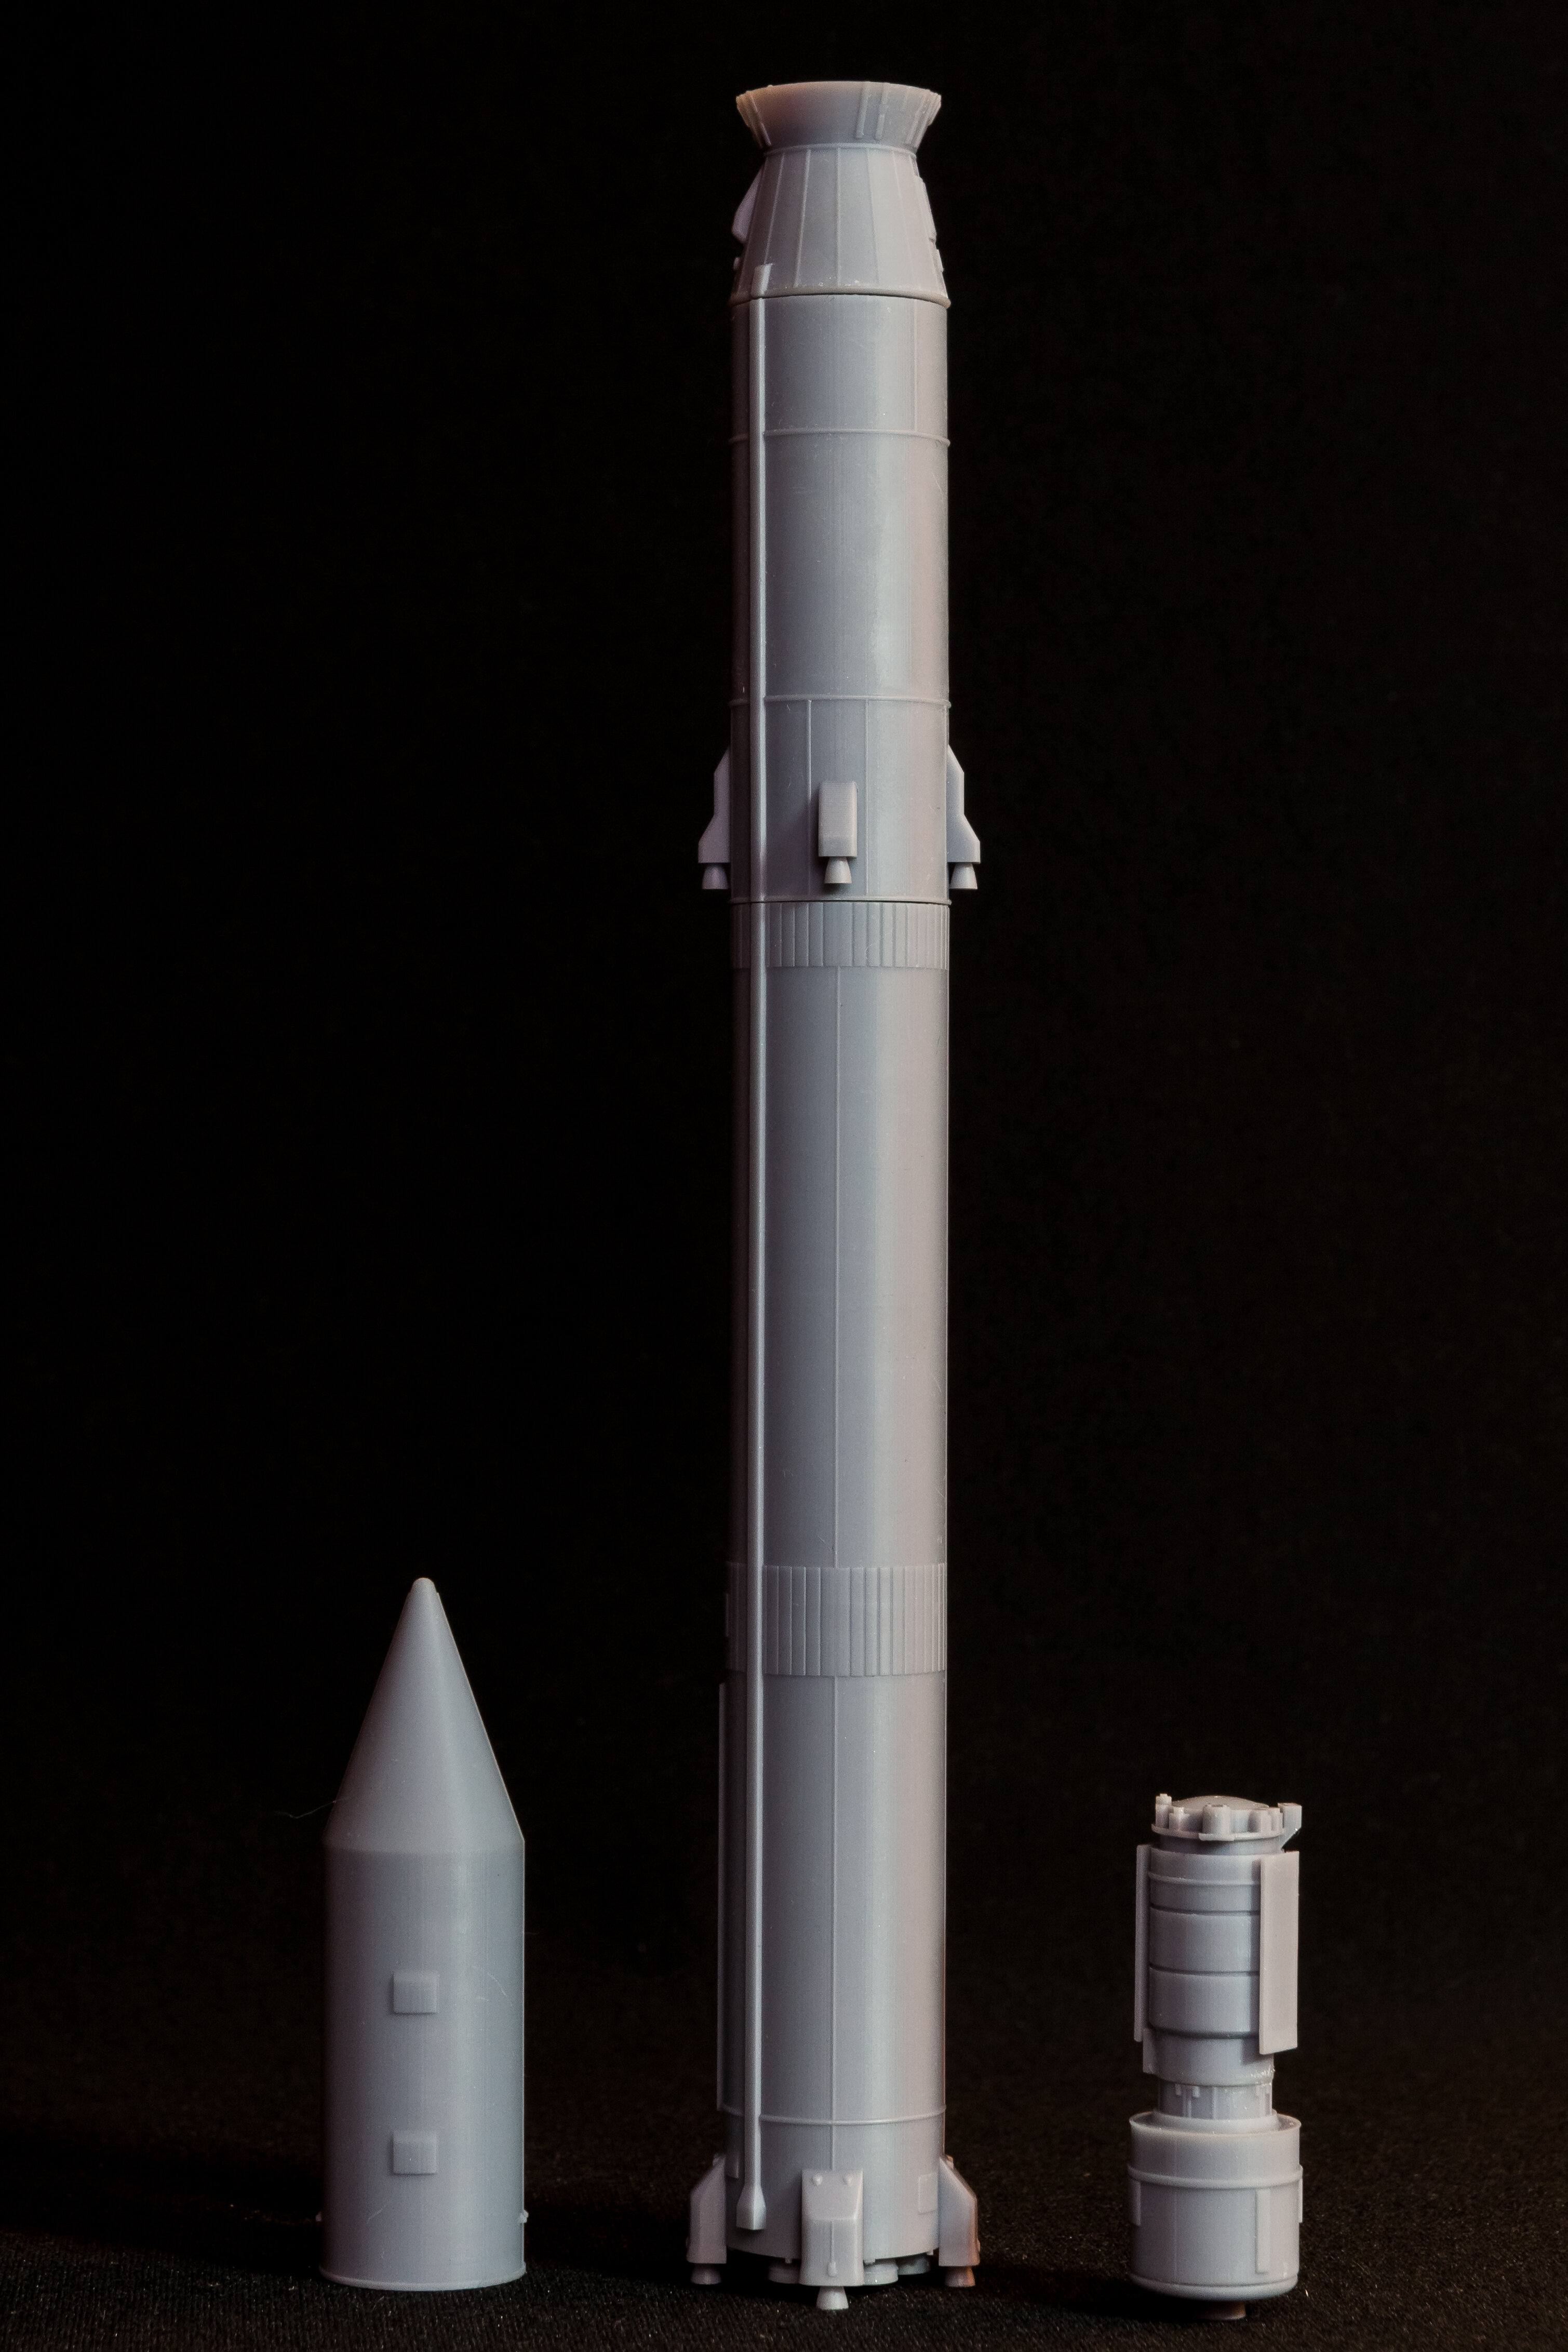 AM145019 Ракета-носитель Циклон-3 с аппаратом Коронас-Фотон